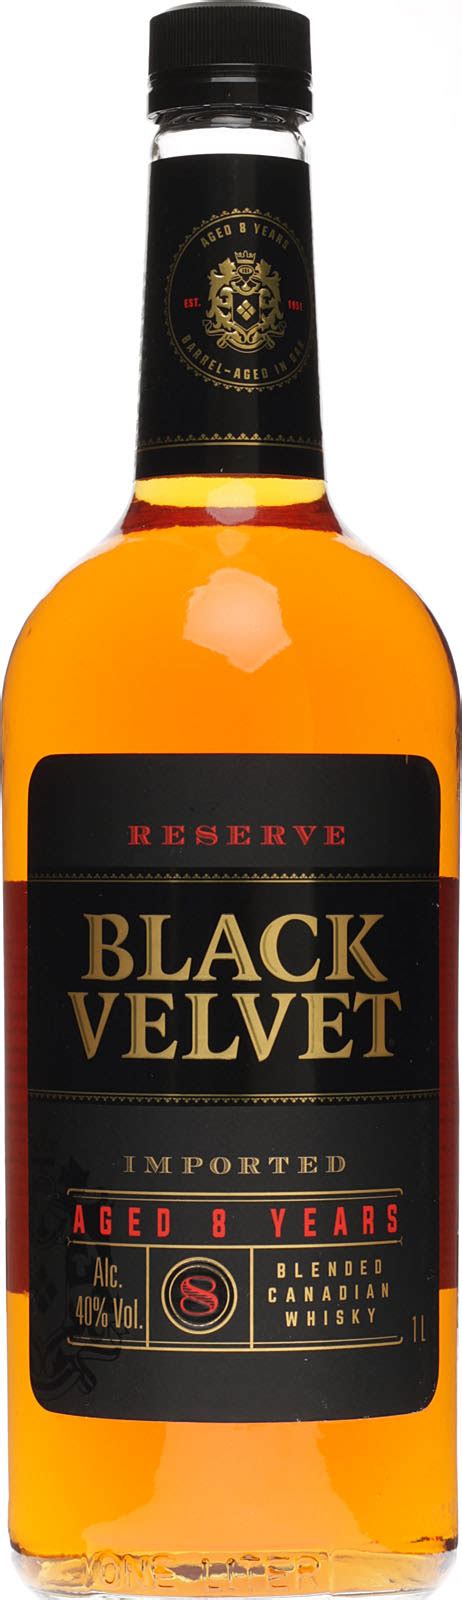 Black Velvet Reserve Blended Canadian Whisky 8 Jahre